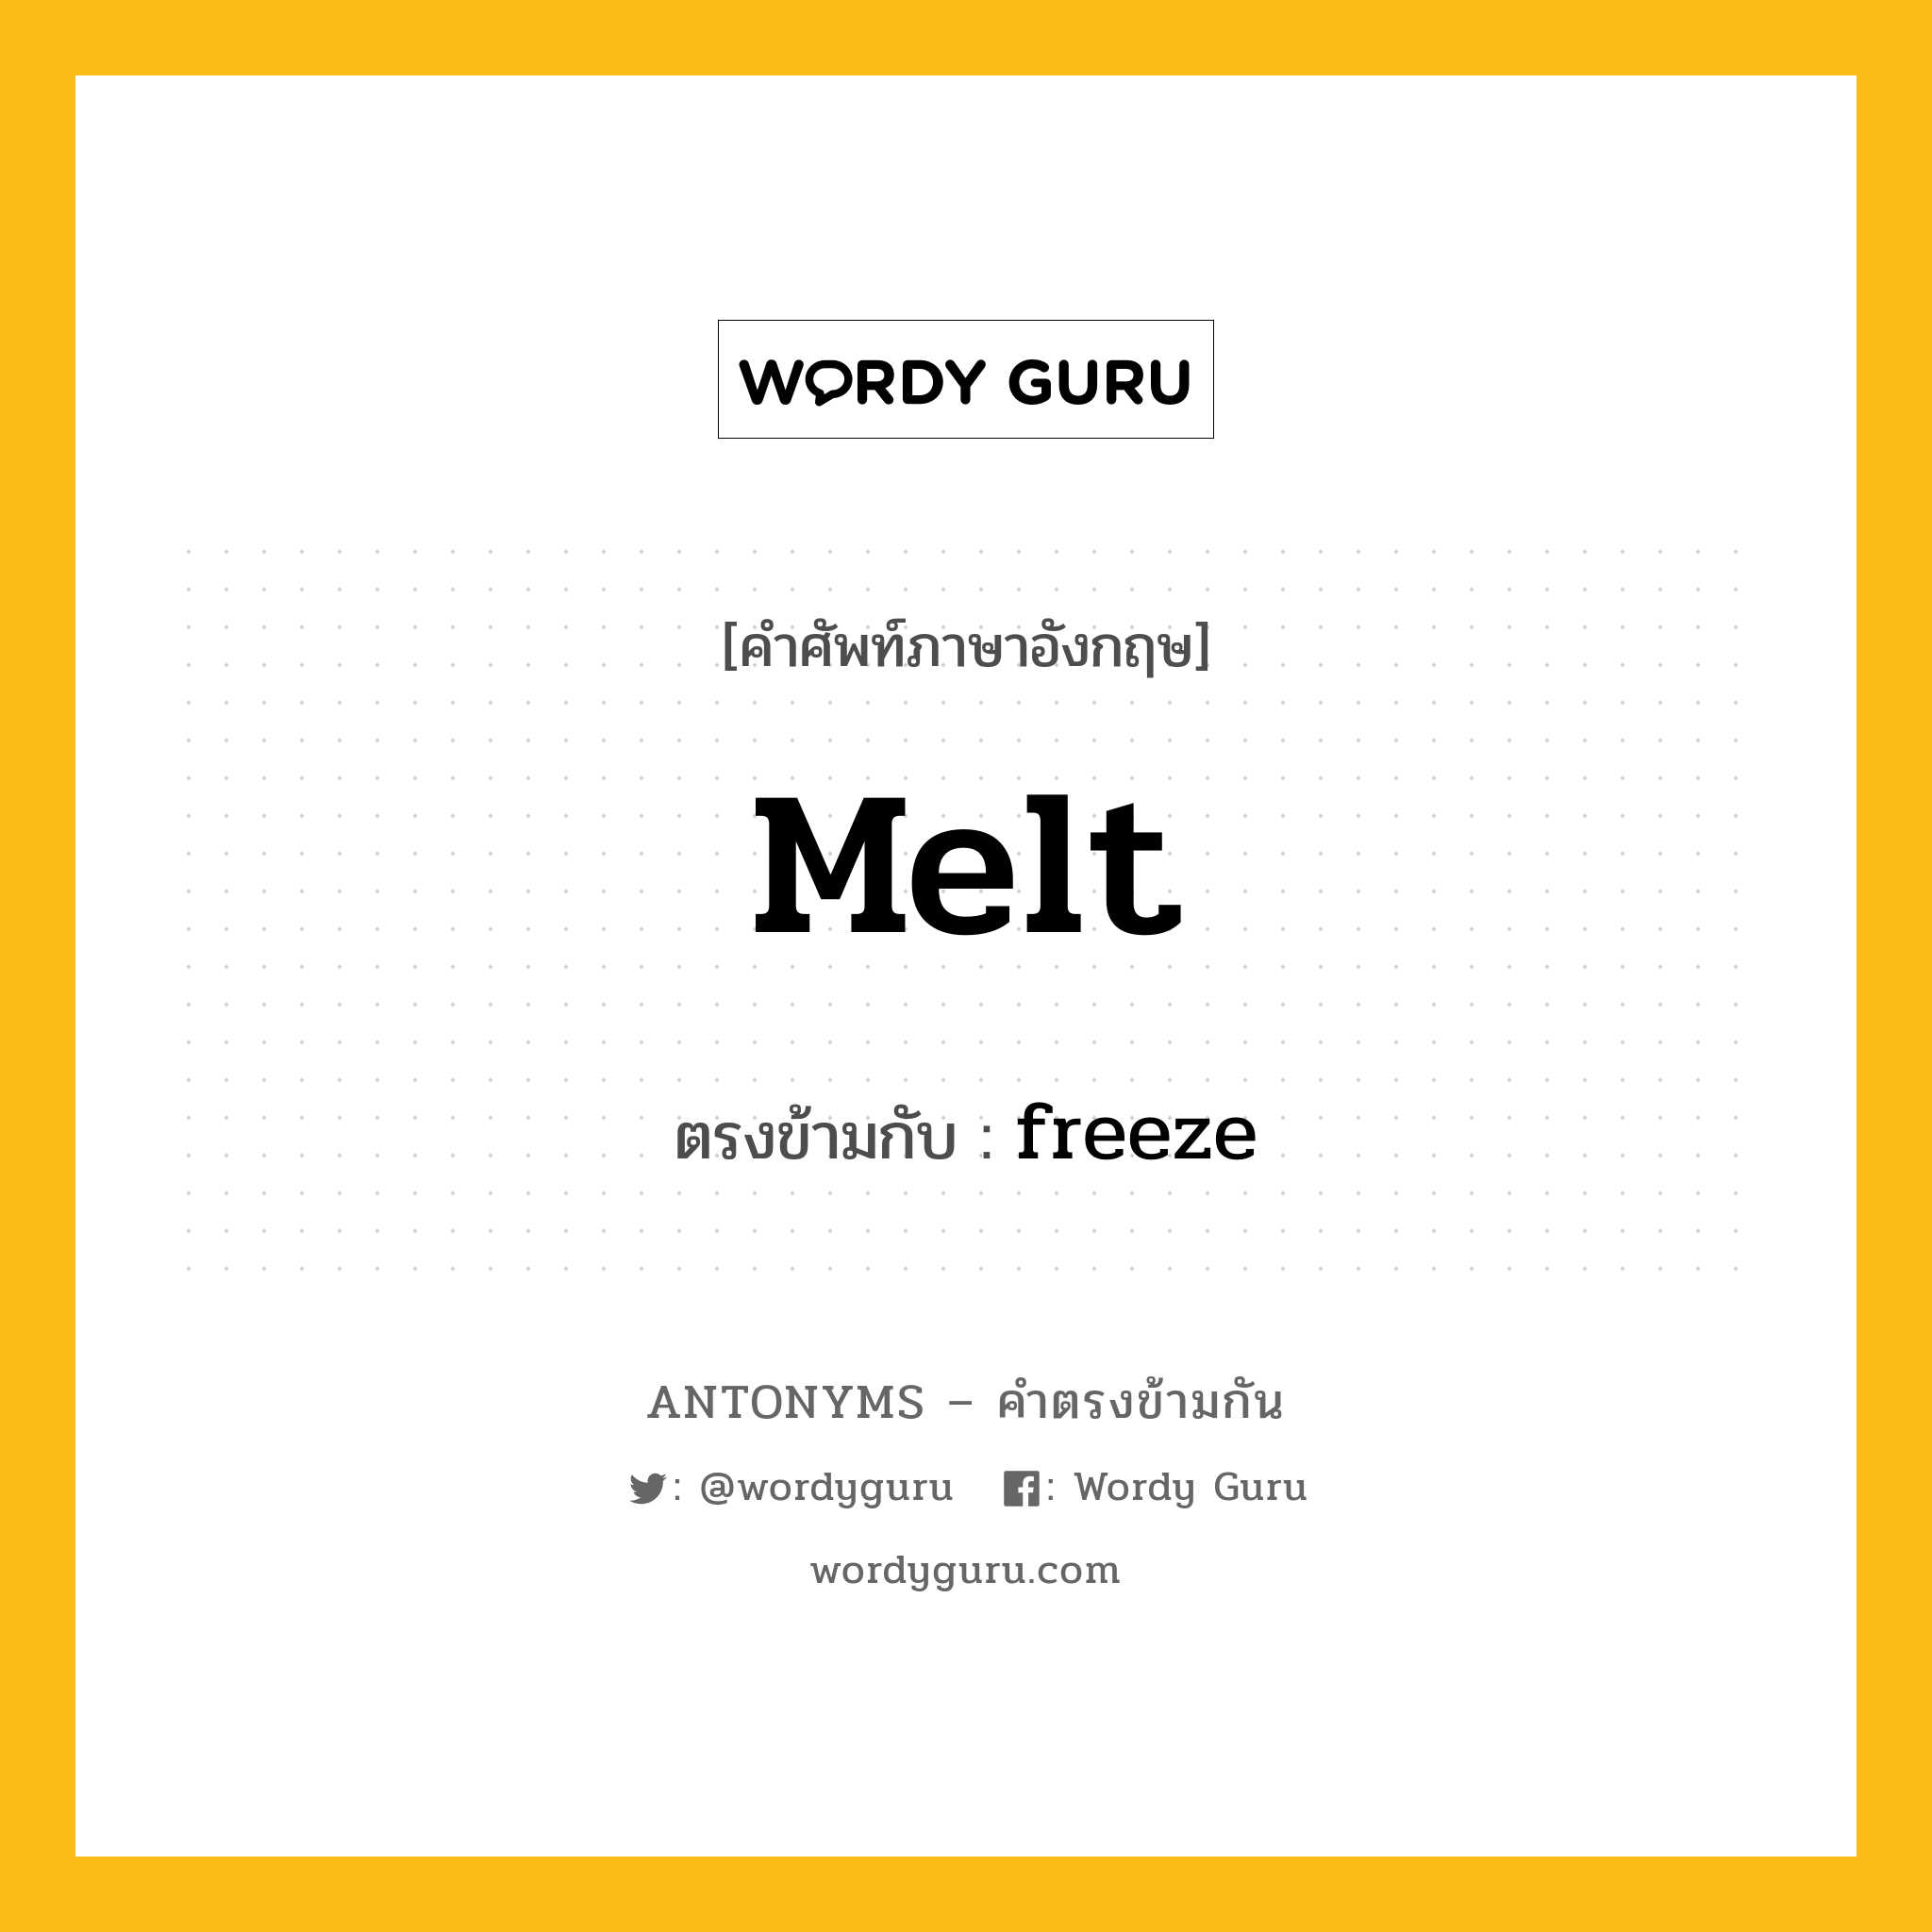 melt เป็นคำตรงข้ามกับคำไหนบ้าง?, คำศัพท์ภาษาอังกฤษ melt ตรงข้ามกับ freeze หมวด freeze